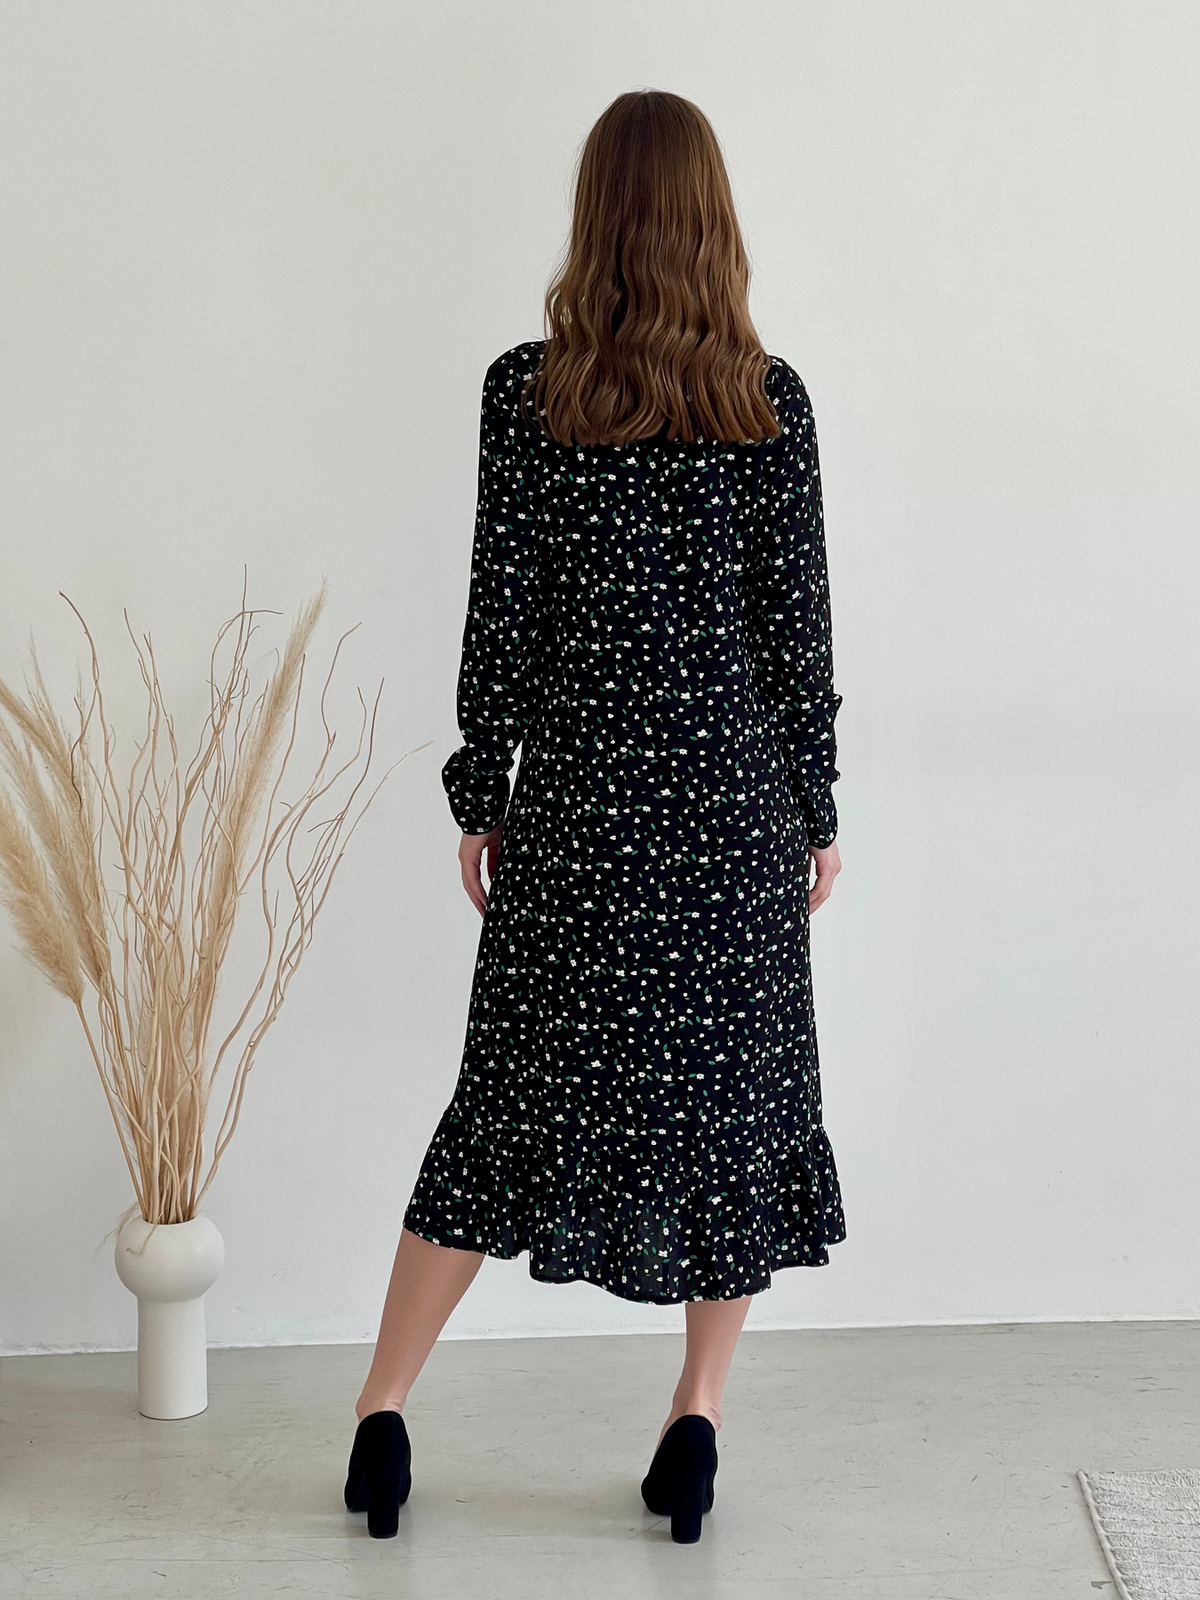 Купить Длинное платье в цветочек черное с длинным рукавом Merlini Фори 700001204, размер 42-44 (S-M) в интернет-магазине